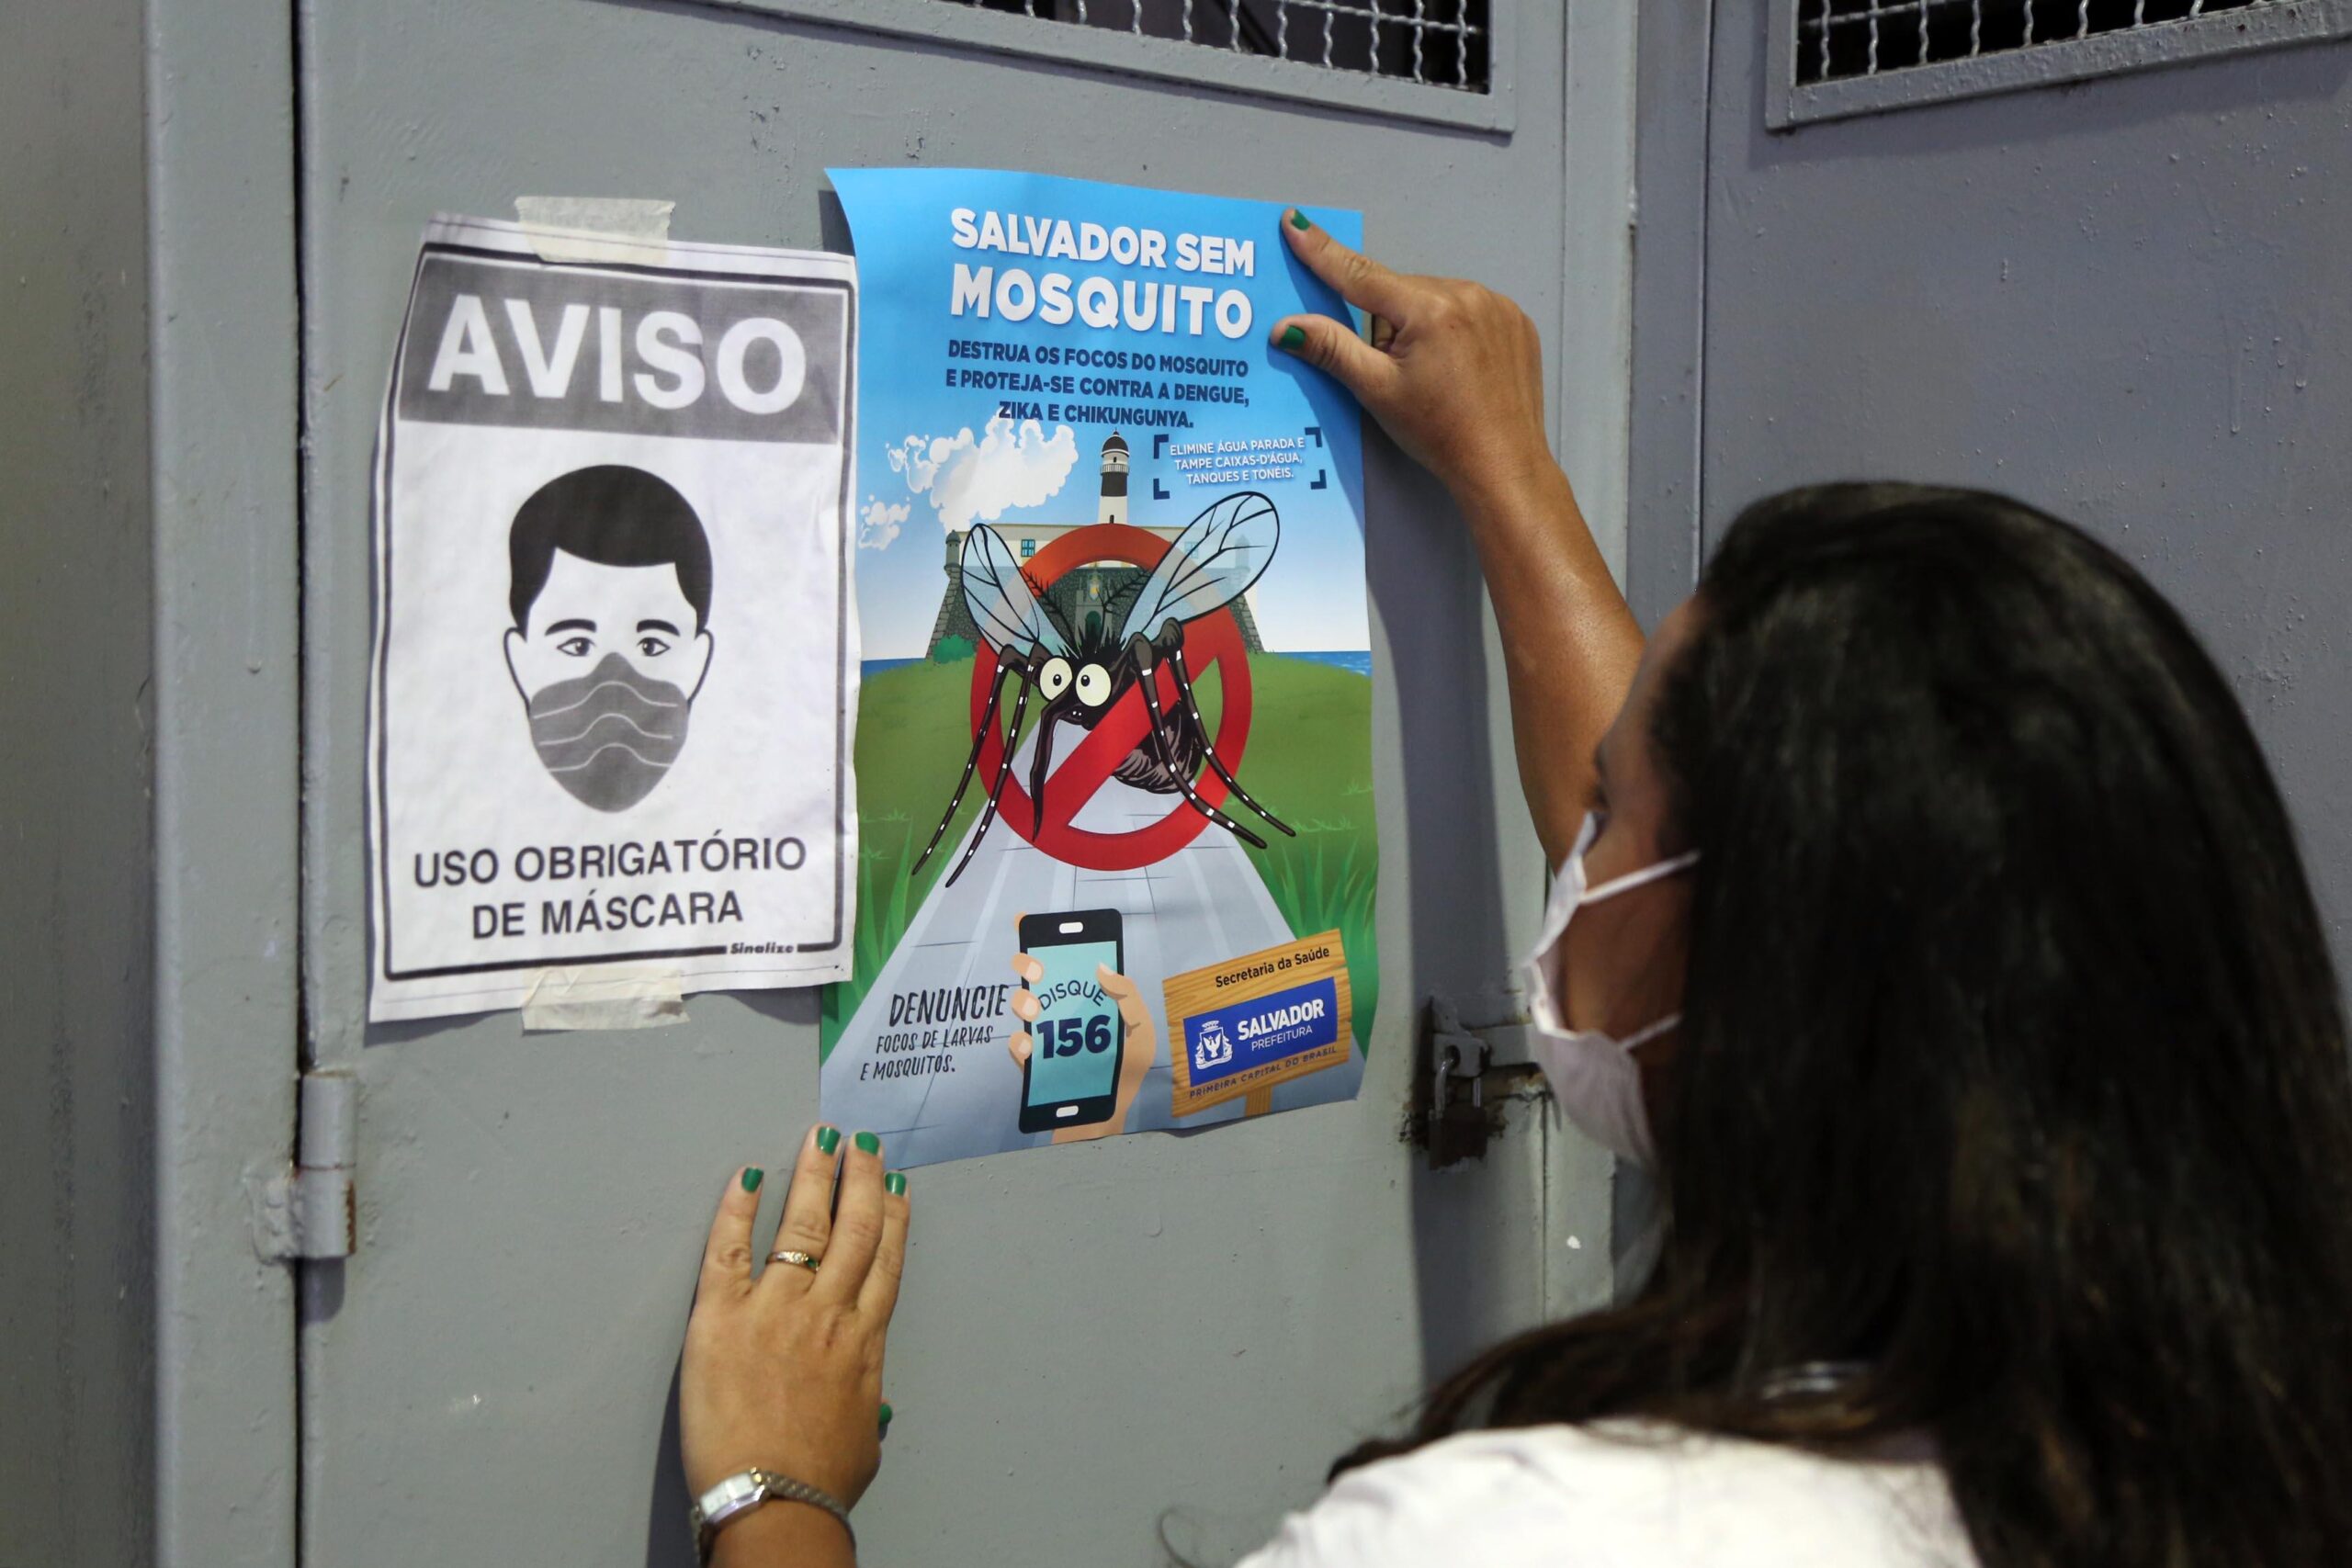 Plano Verão Sem Mosquito prossegue com ações de combate ao Aedes aegypti